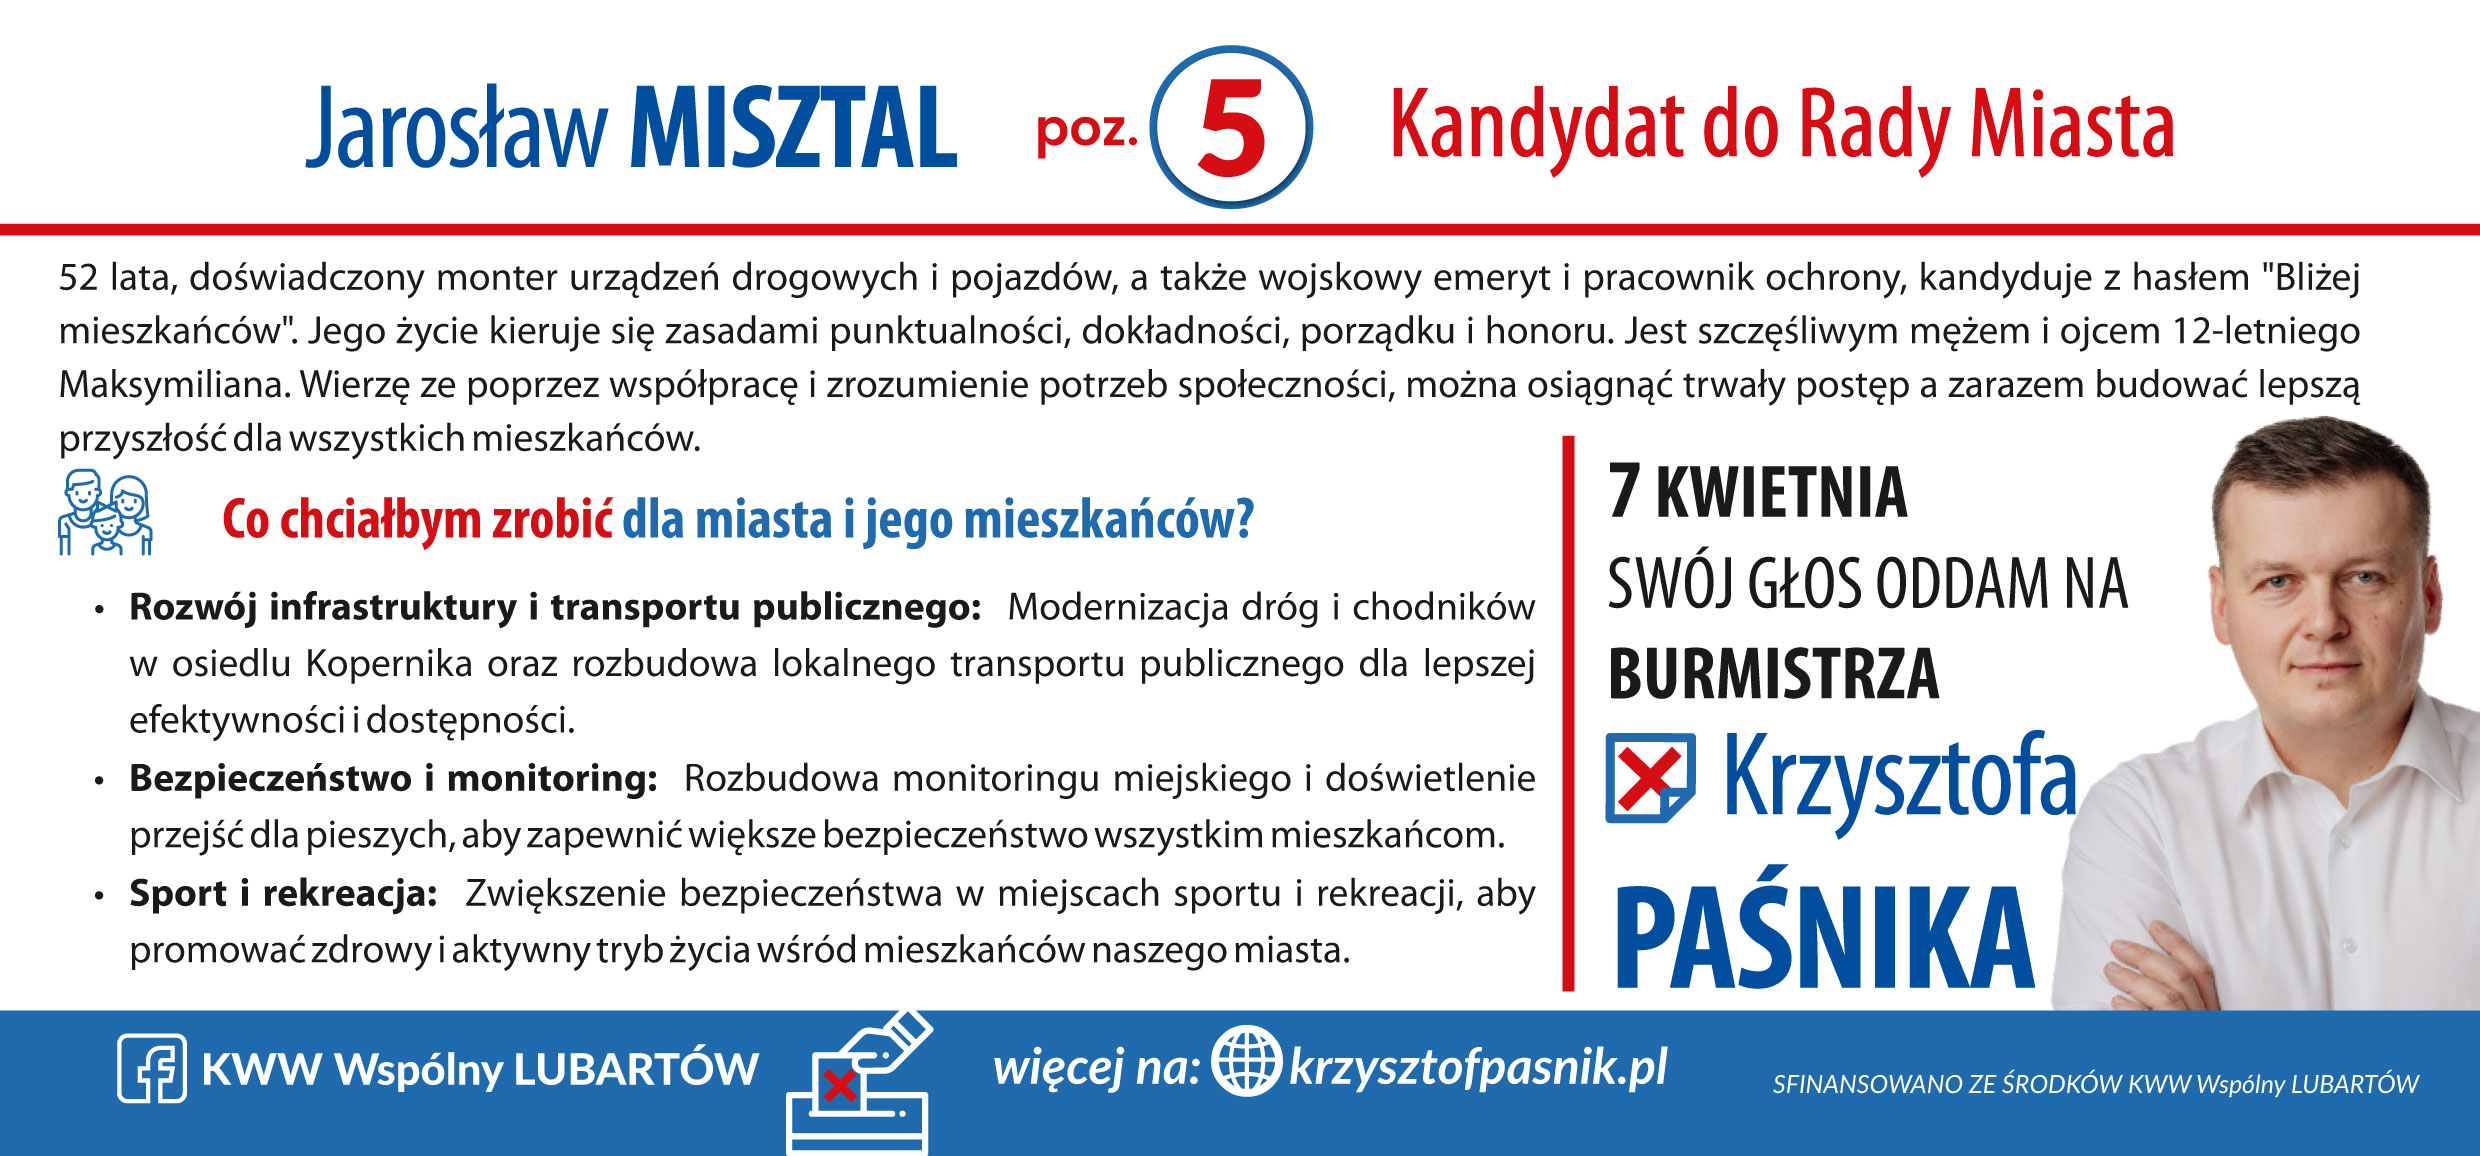 MIsztal_Jarosław-2